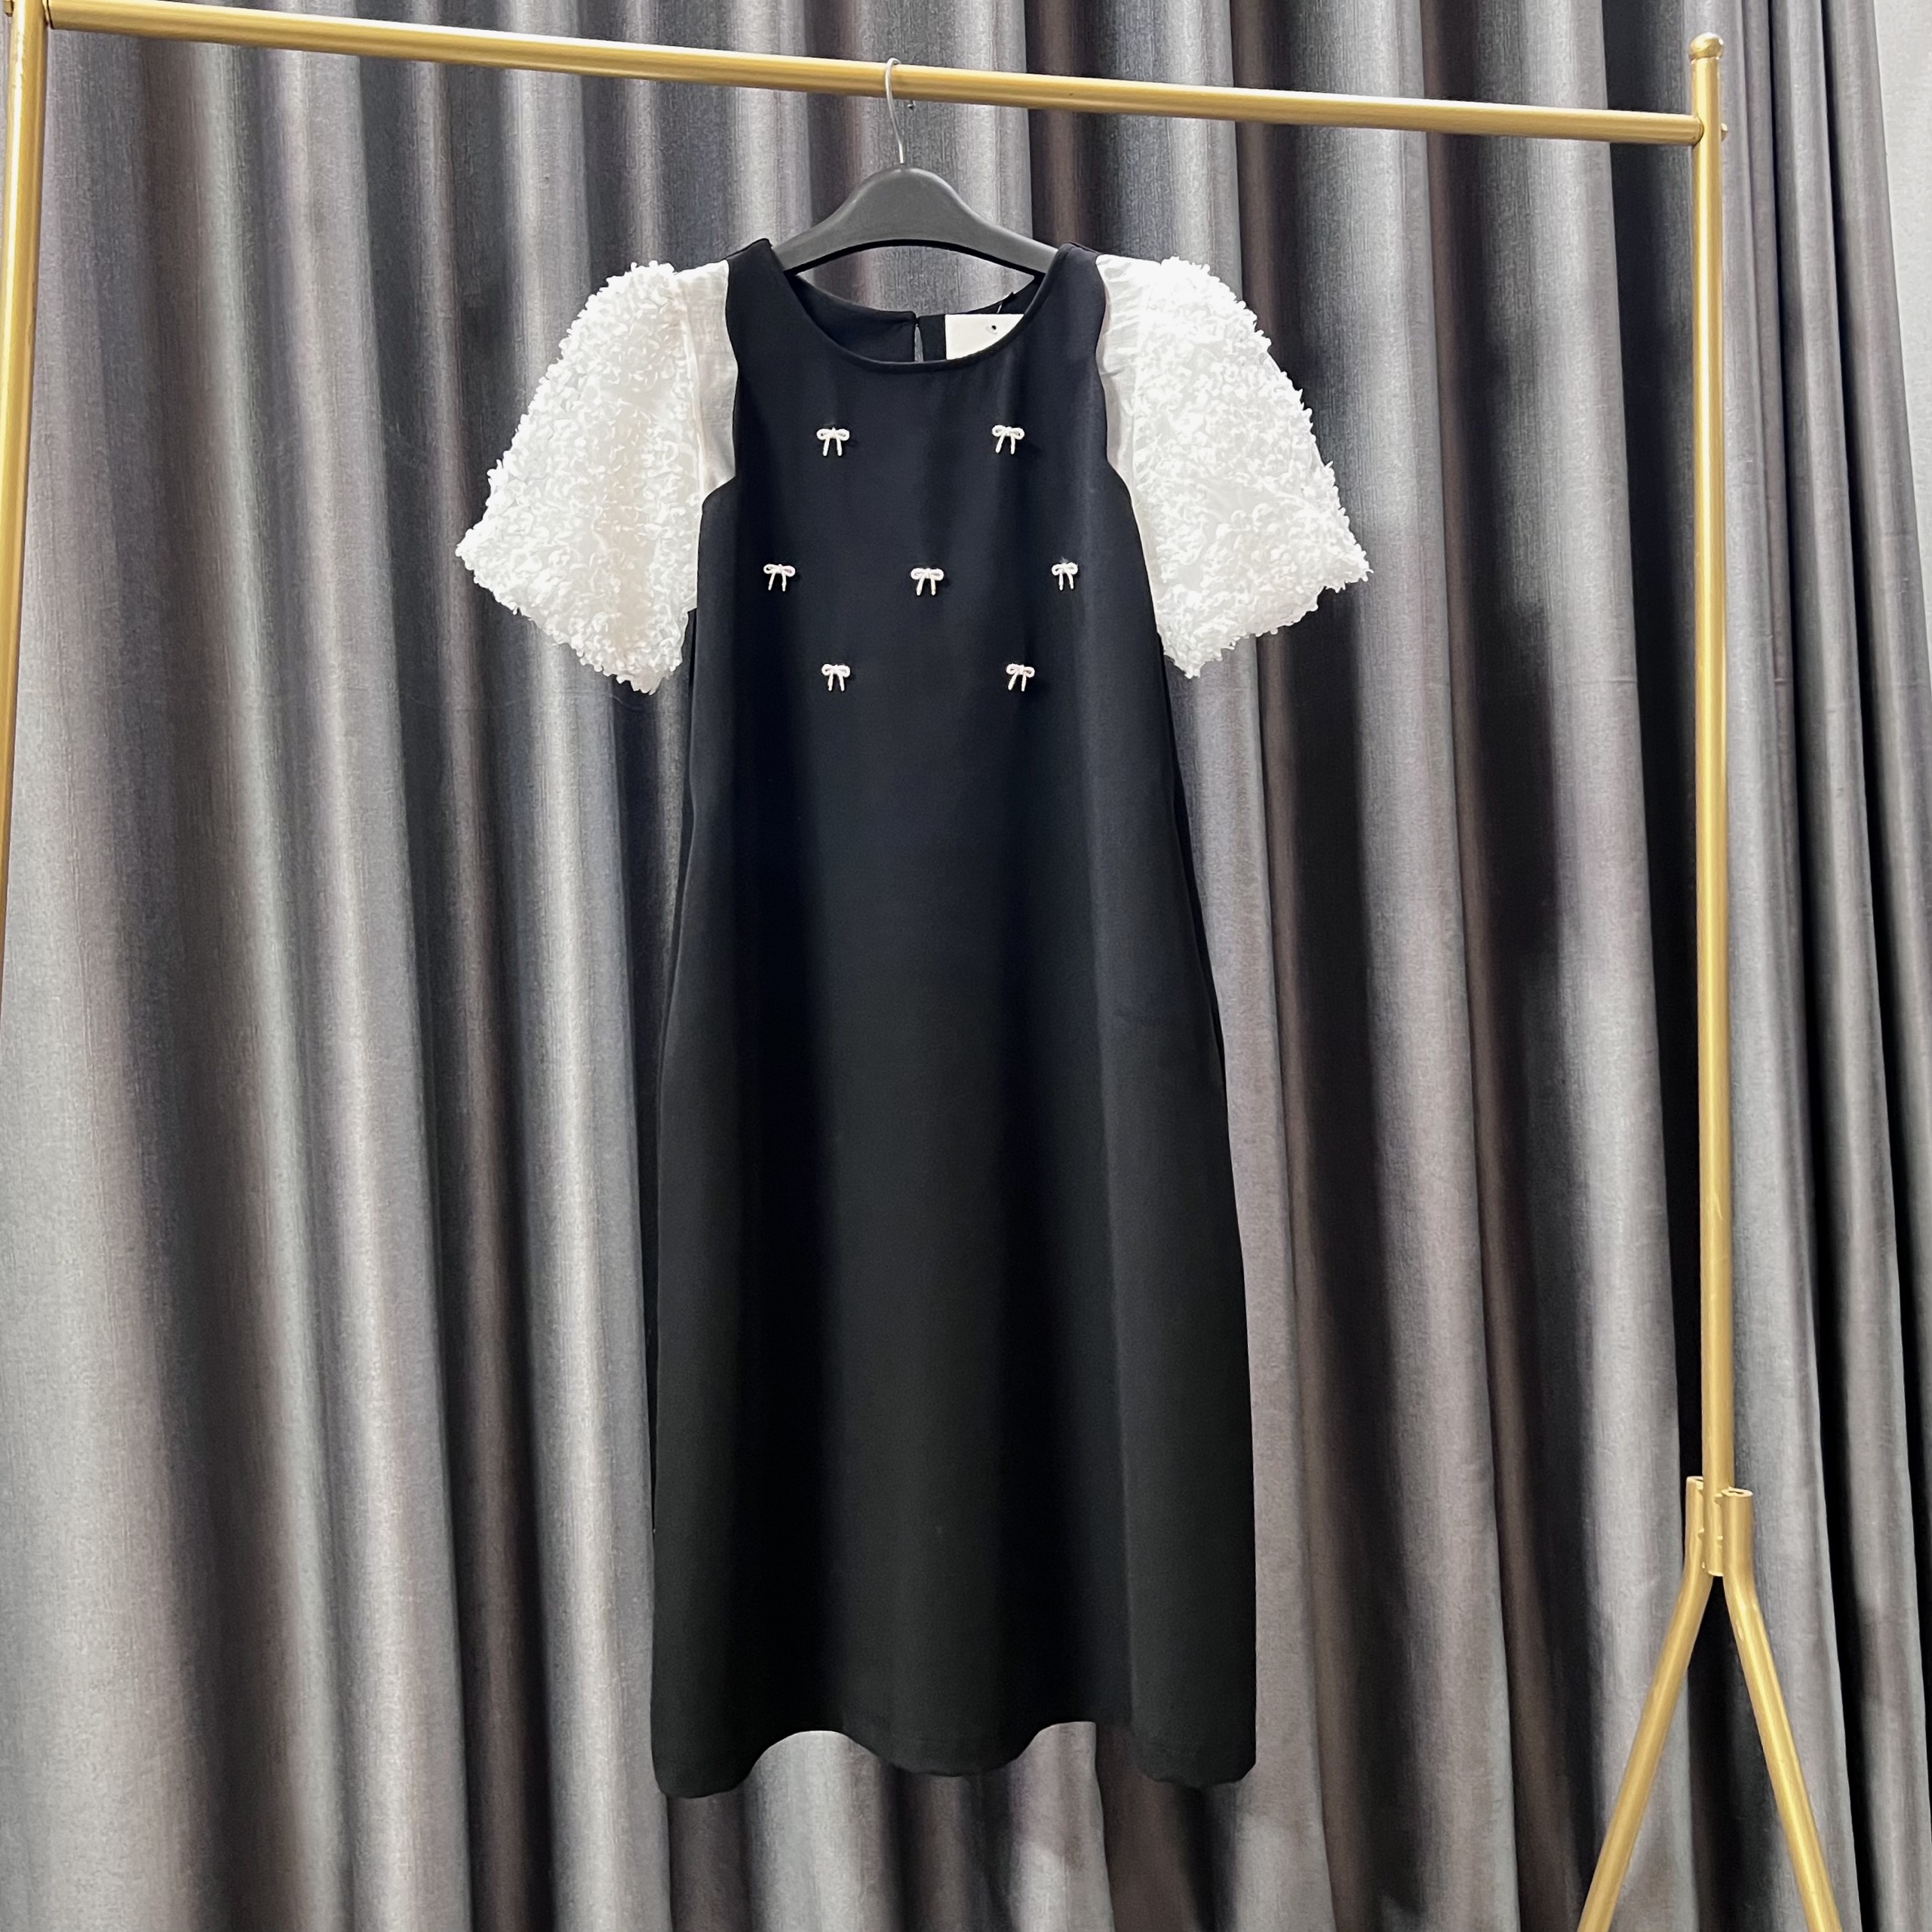 HÀNG THIẾT KẾ- Váy Đầm Bầu Thu Đông Chất Liệu Tuyết Mưa Phối Ren 3D Dành Cho Đi Tiệc, Công Sở Diện Tết Cực Đẹp